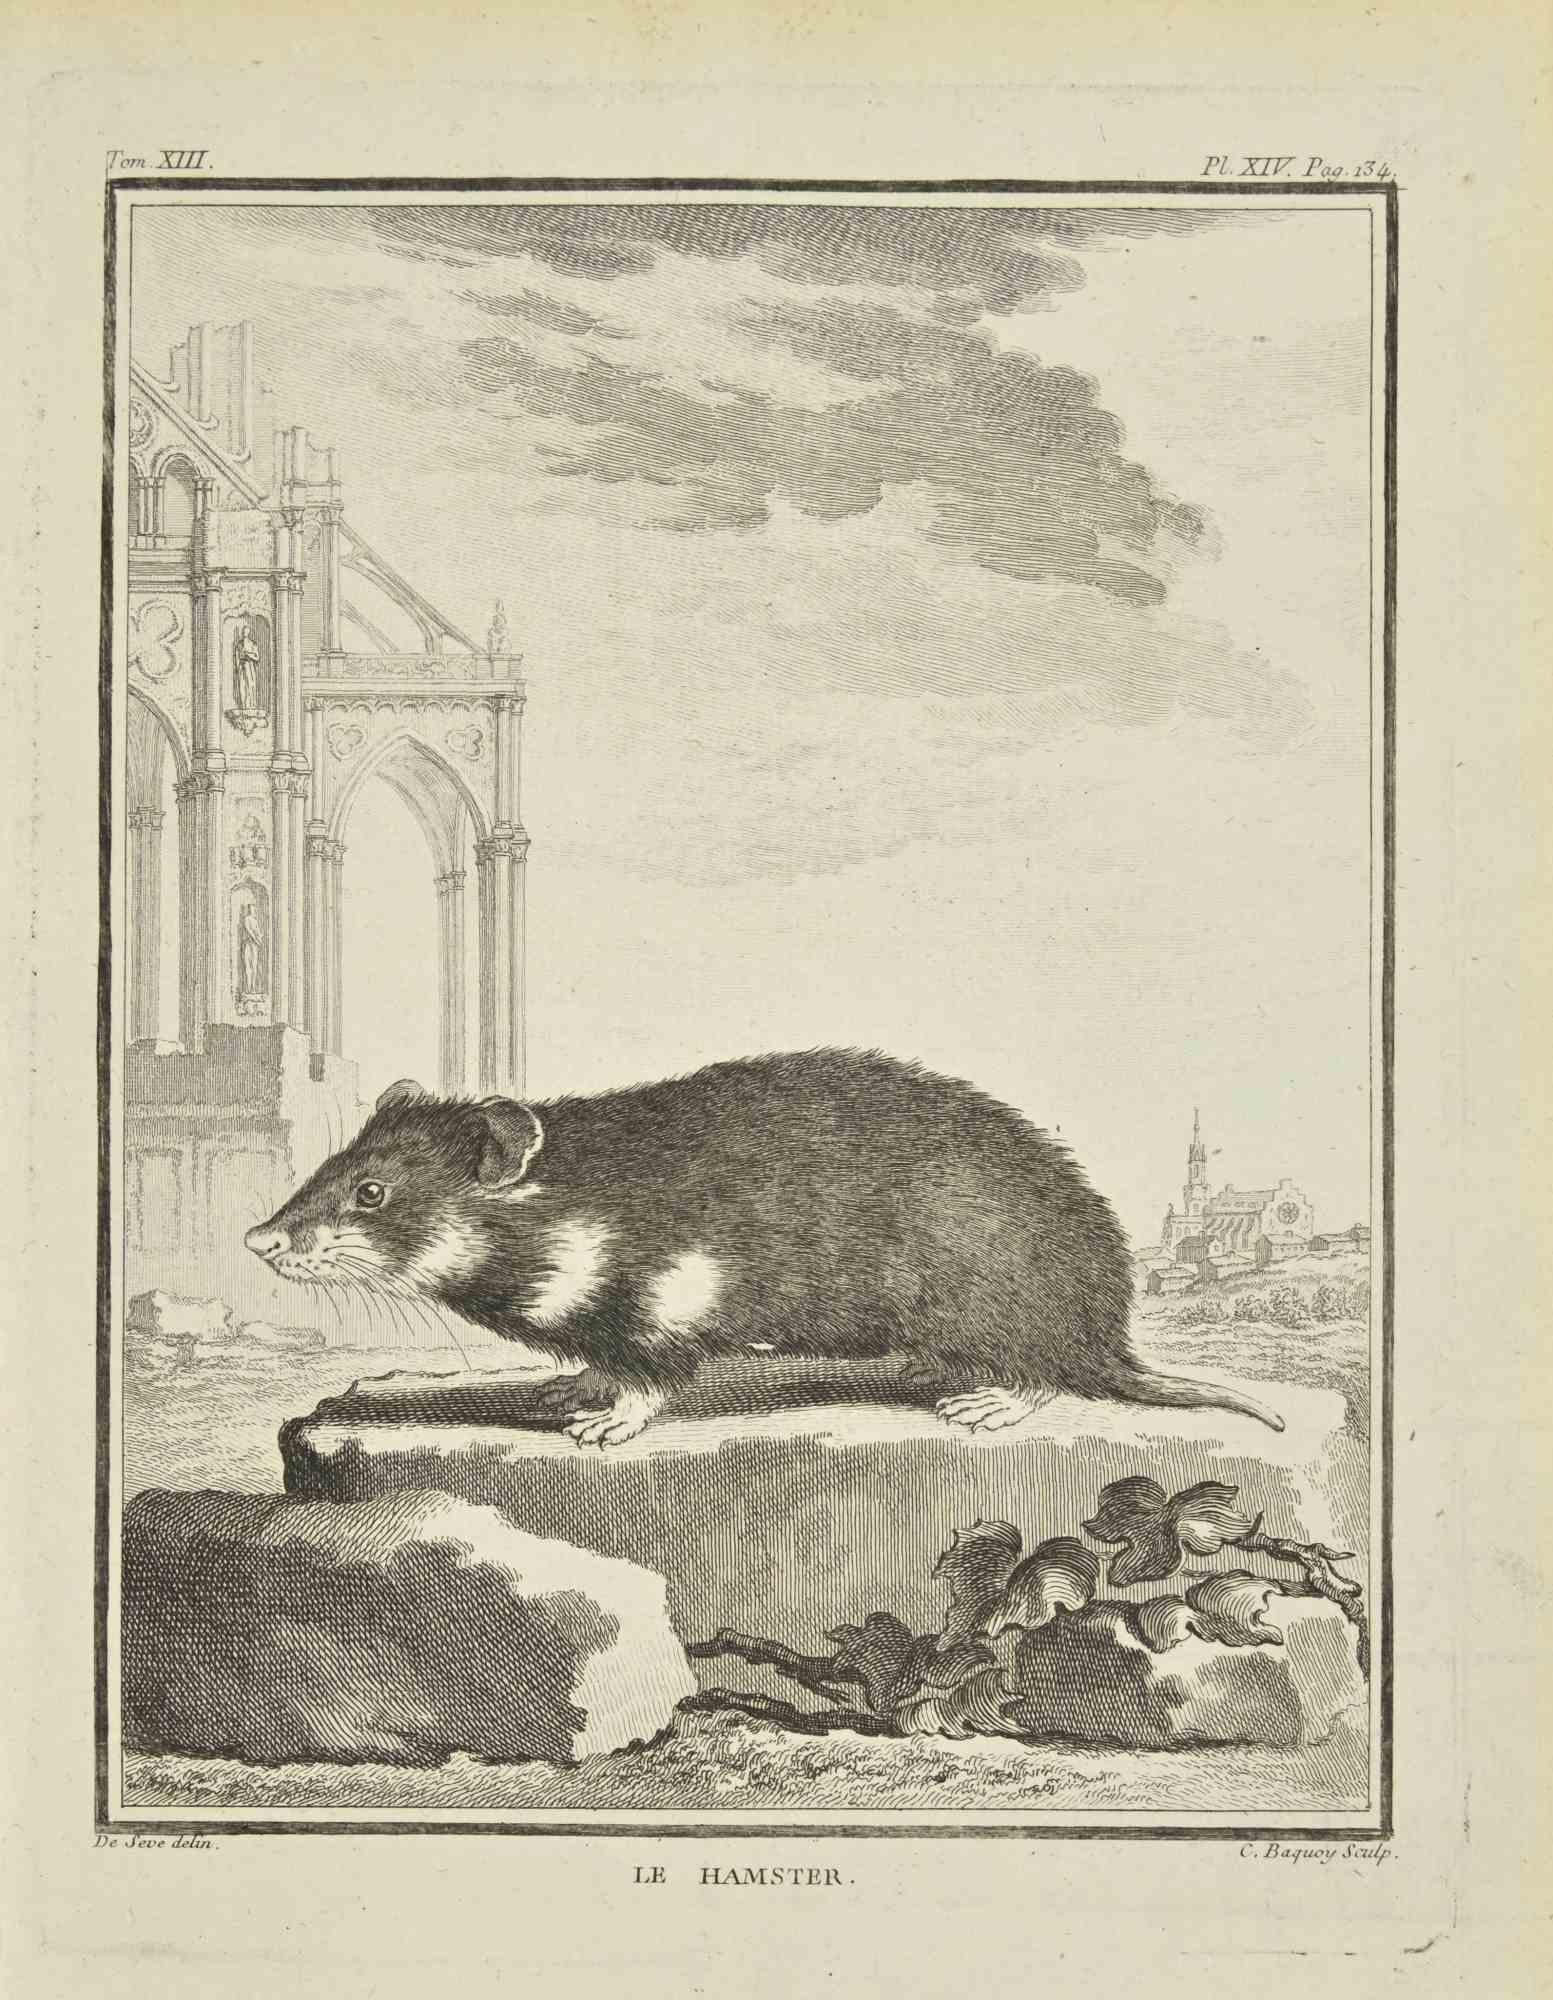 Le Hamster ist eine Radierung von Pierre Charles Baquoy aus dem Jahr 1771.

Es gehört zu der Reihe "Histoire naturelle, générale et particulière avec la description du Cabinet du Roi".

Pierre Charles Baquoy (27. Juli 1759 - 4. Februar 1829) war ein